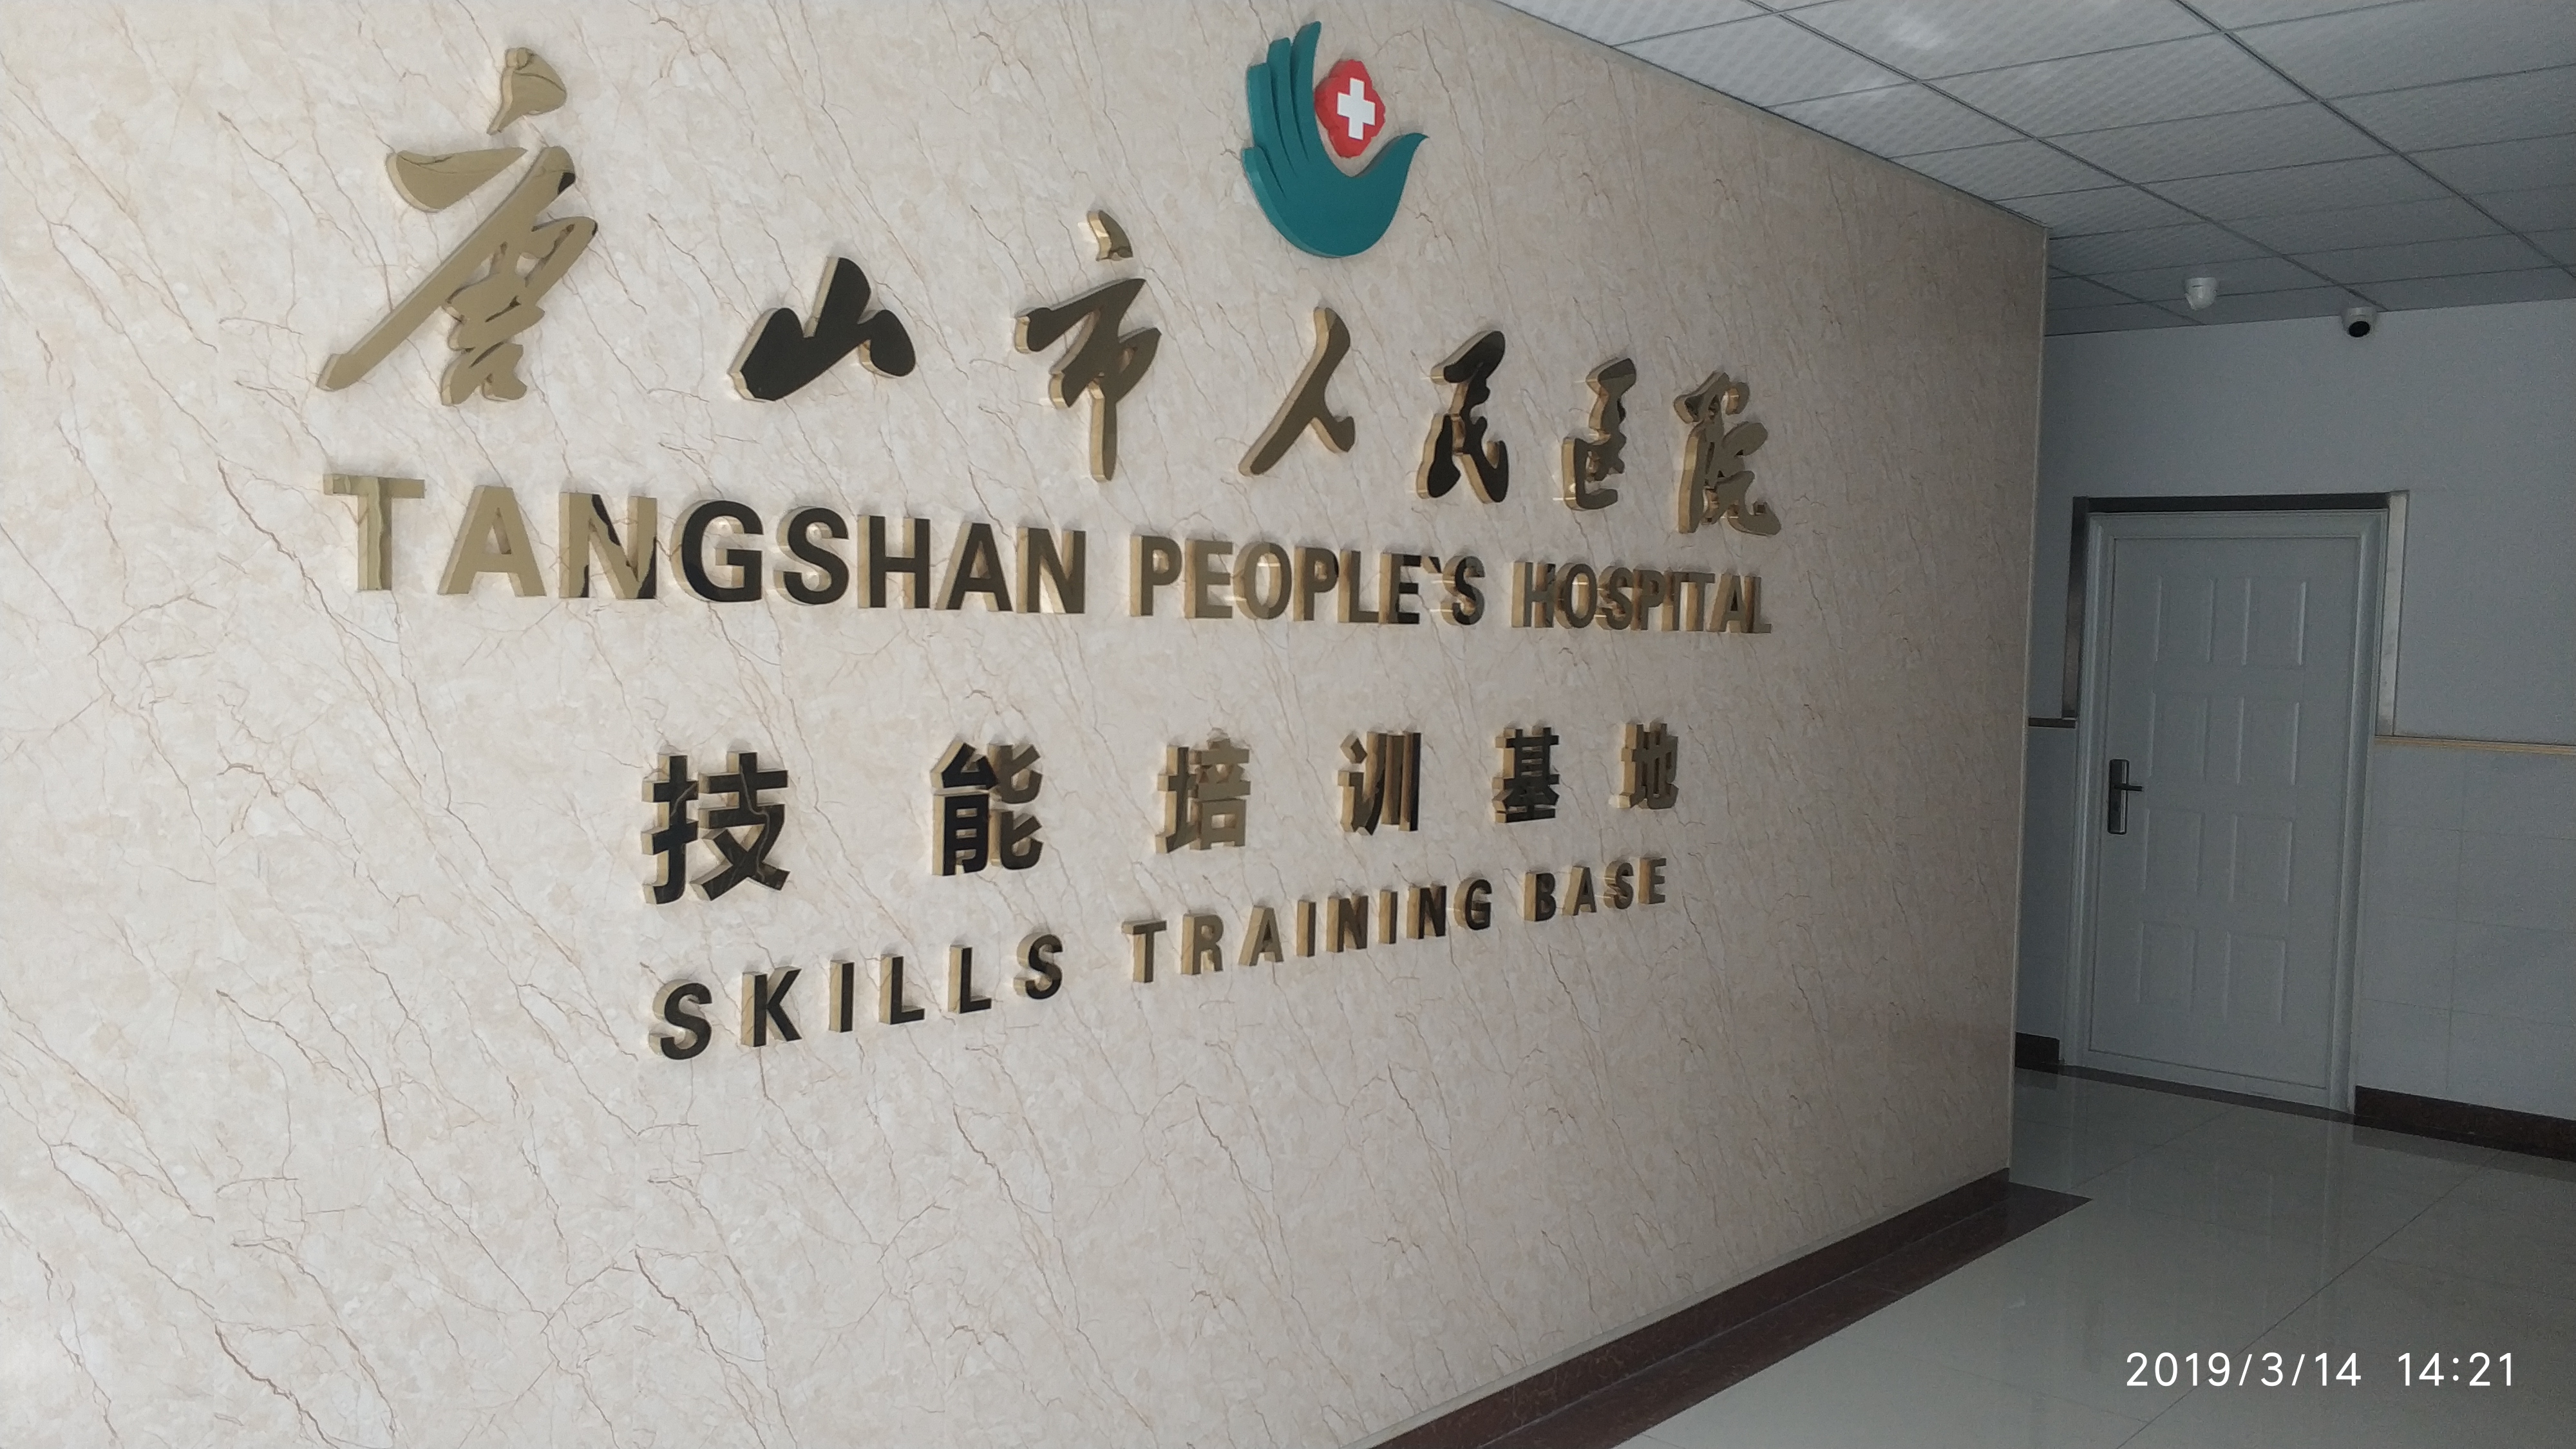 酷游ku游体育电子（KING-BANG）为唐山市人民医院技能培训中心打造数字会议系统